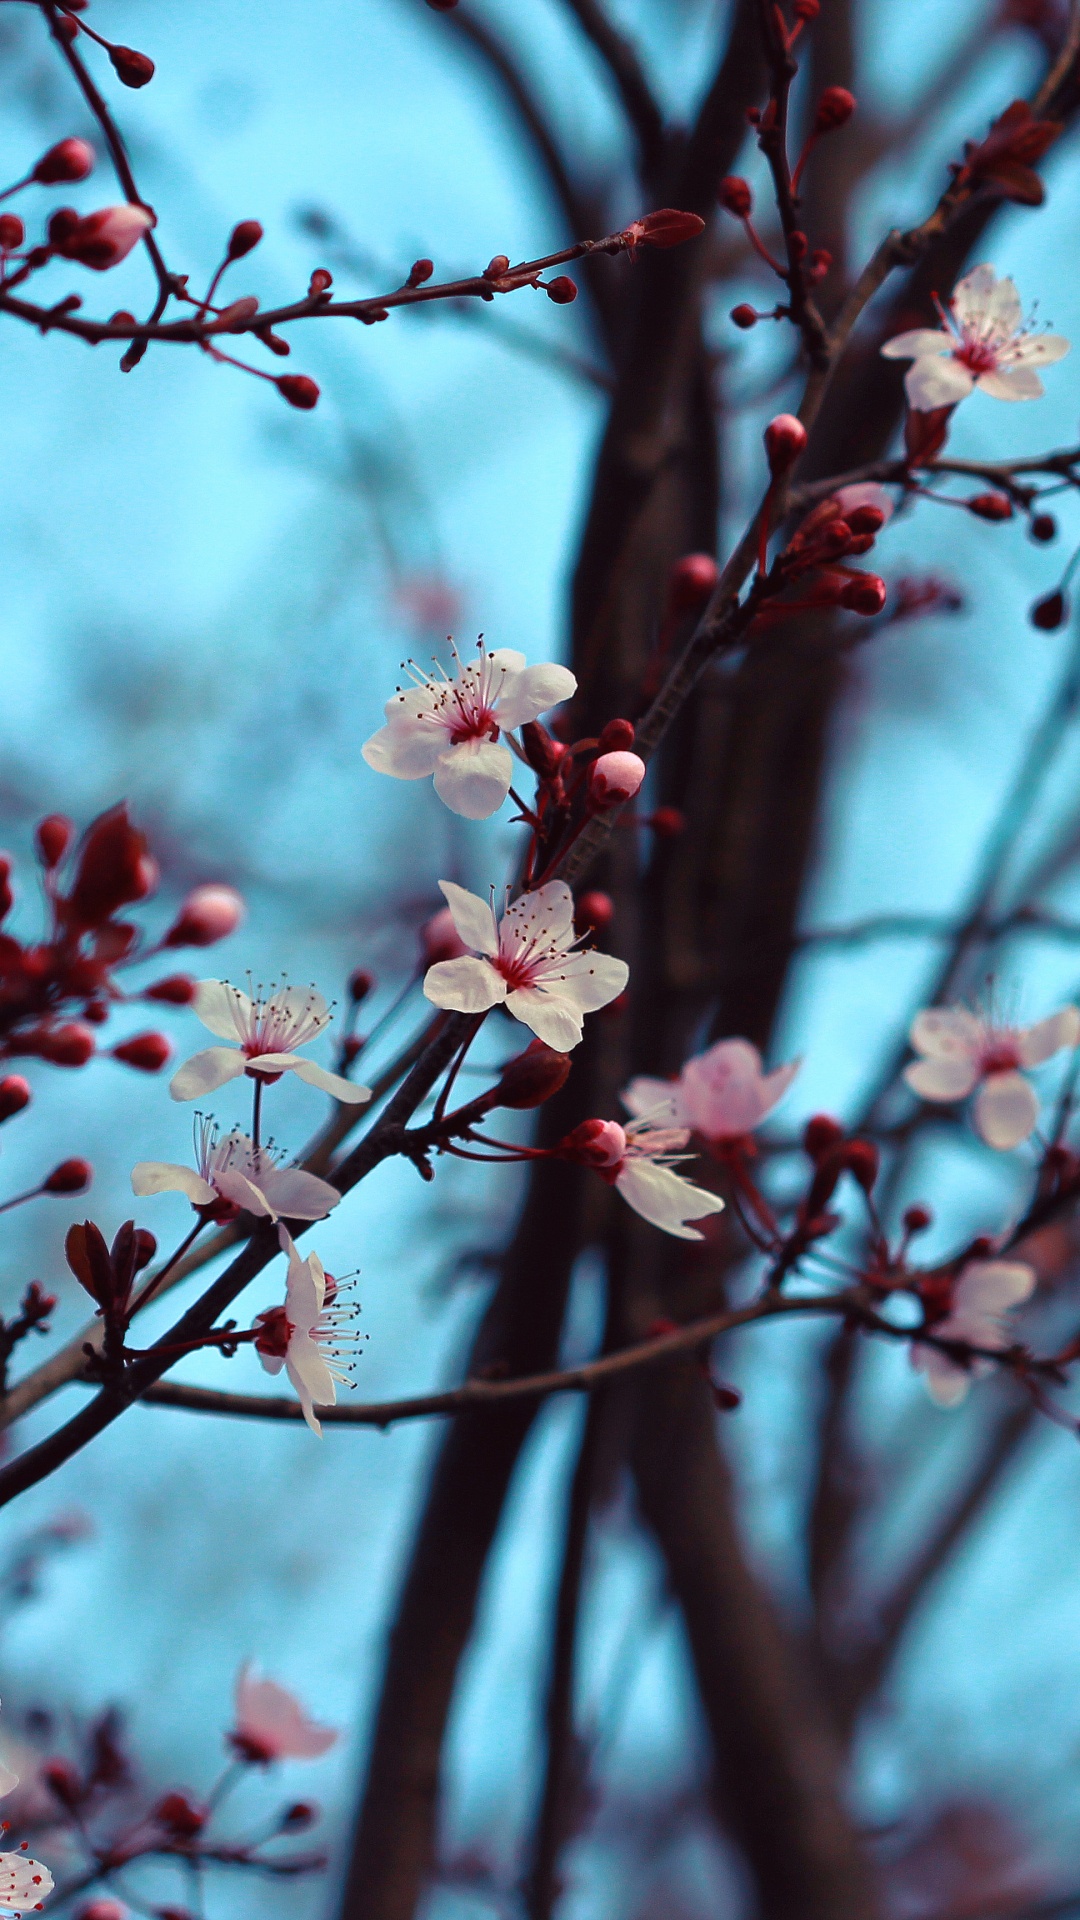 樱花, 开花, 弹簧, 树枝, 木本植物 壁纸 1080x1920 允许